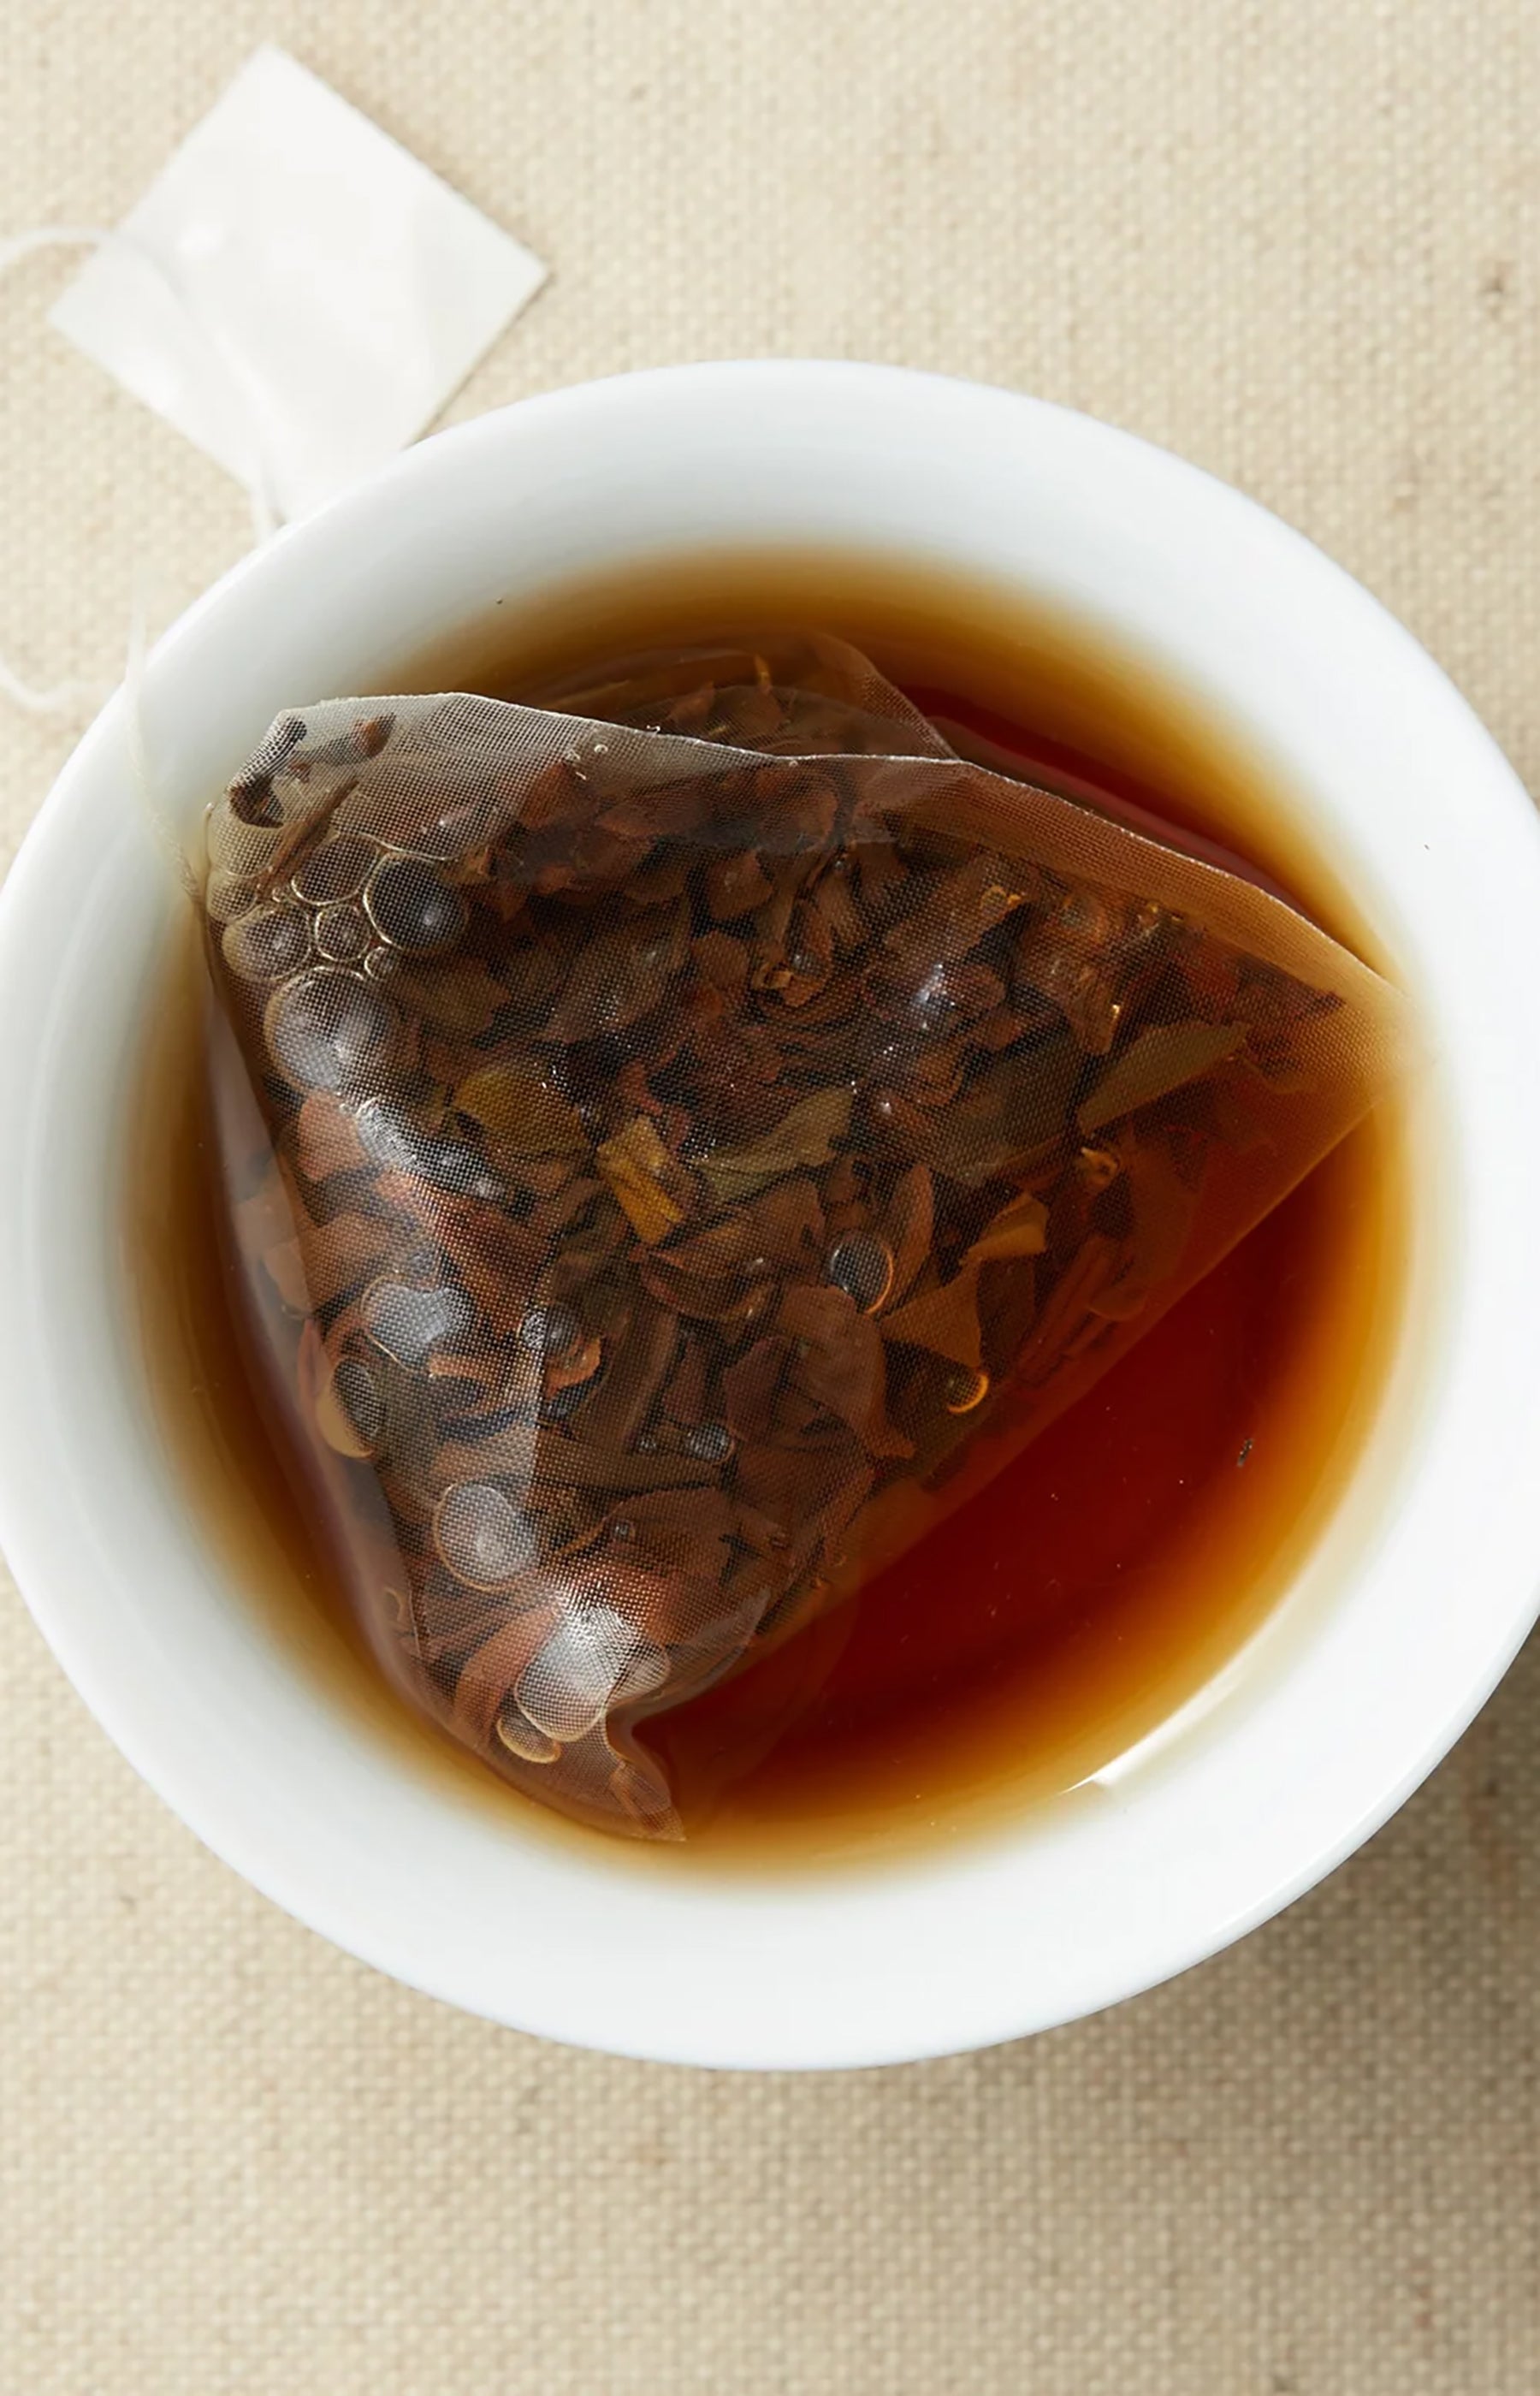 Oriental Beauty Tea